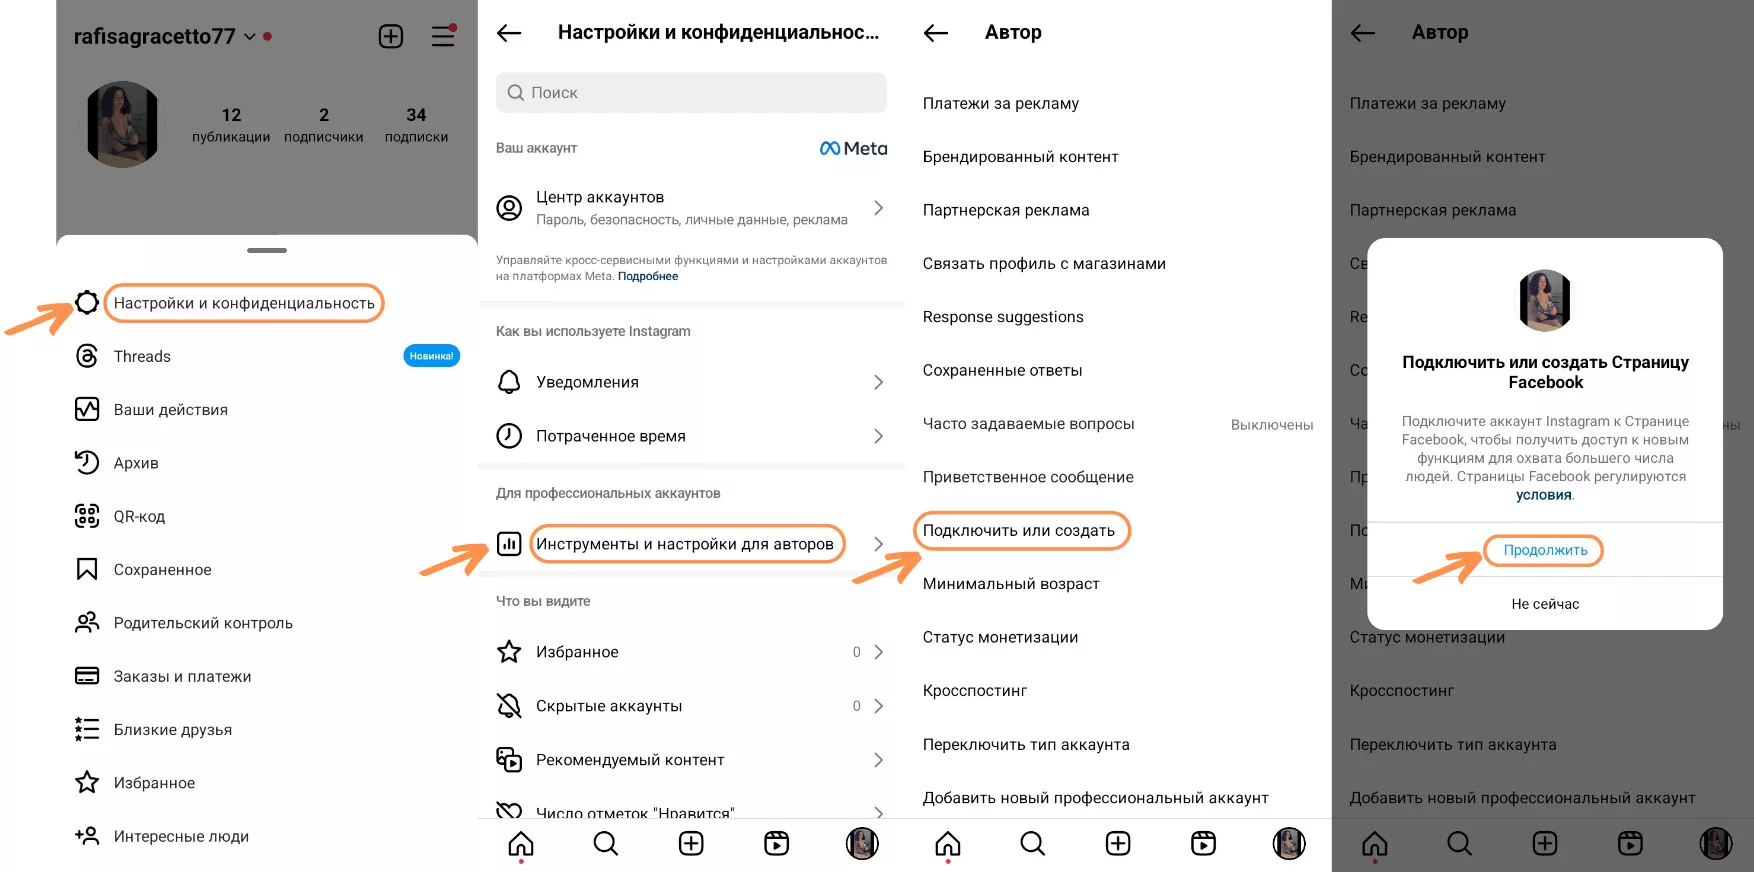 Пошаговая инструкция, как сделать Instagram аккаунт профессиональным, связать его с Facebook и добавить в SMMBOT.net - 5